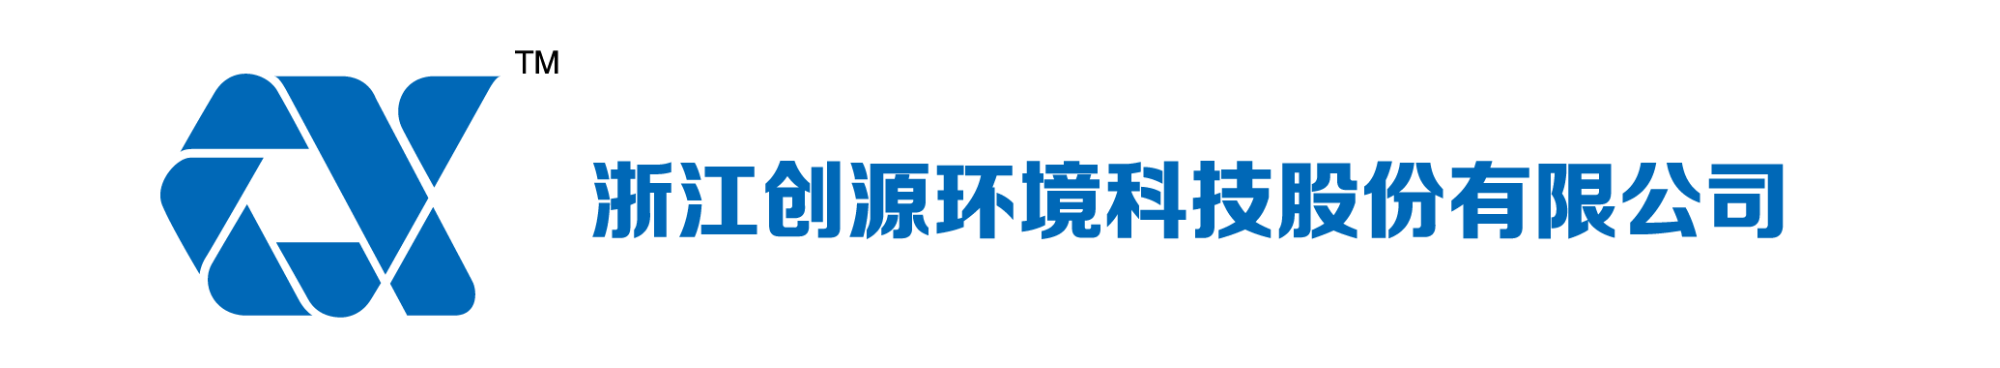 浙江创源环境科技股份有限公司-浙江创源环境科技股份有限公司